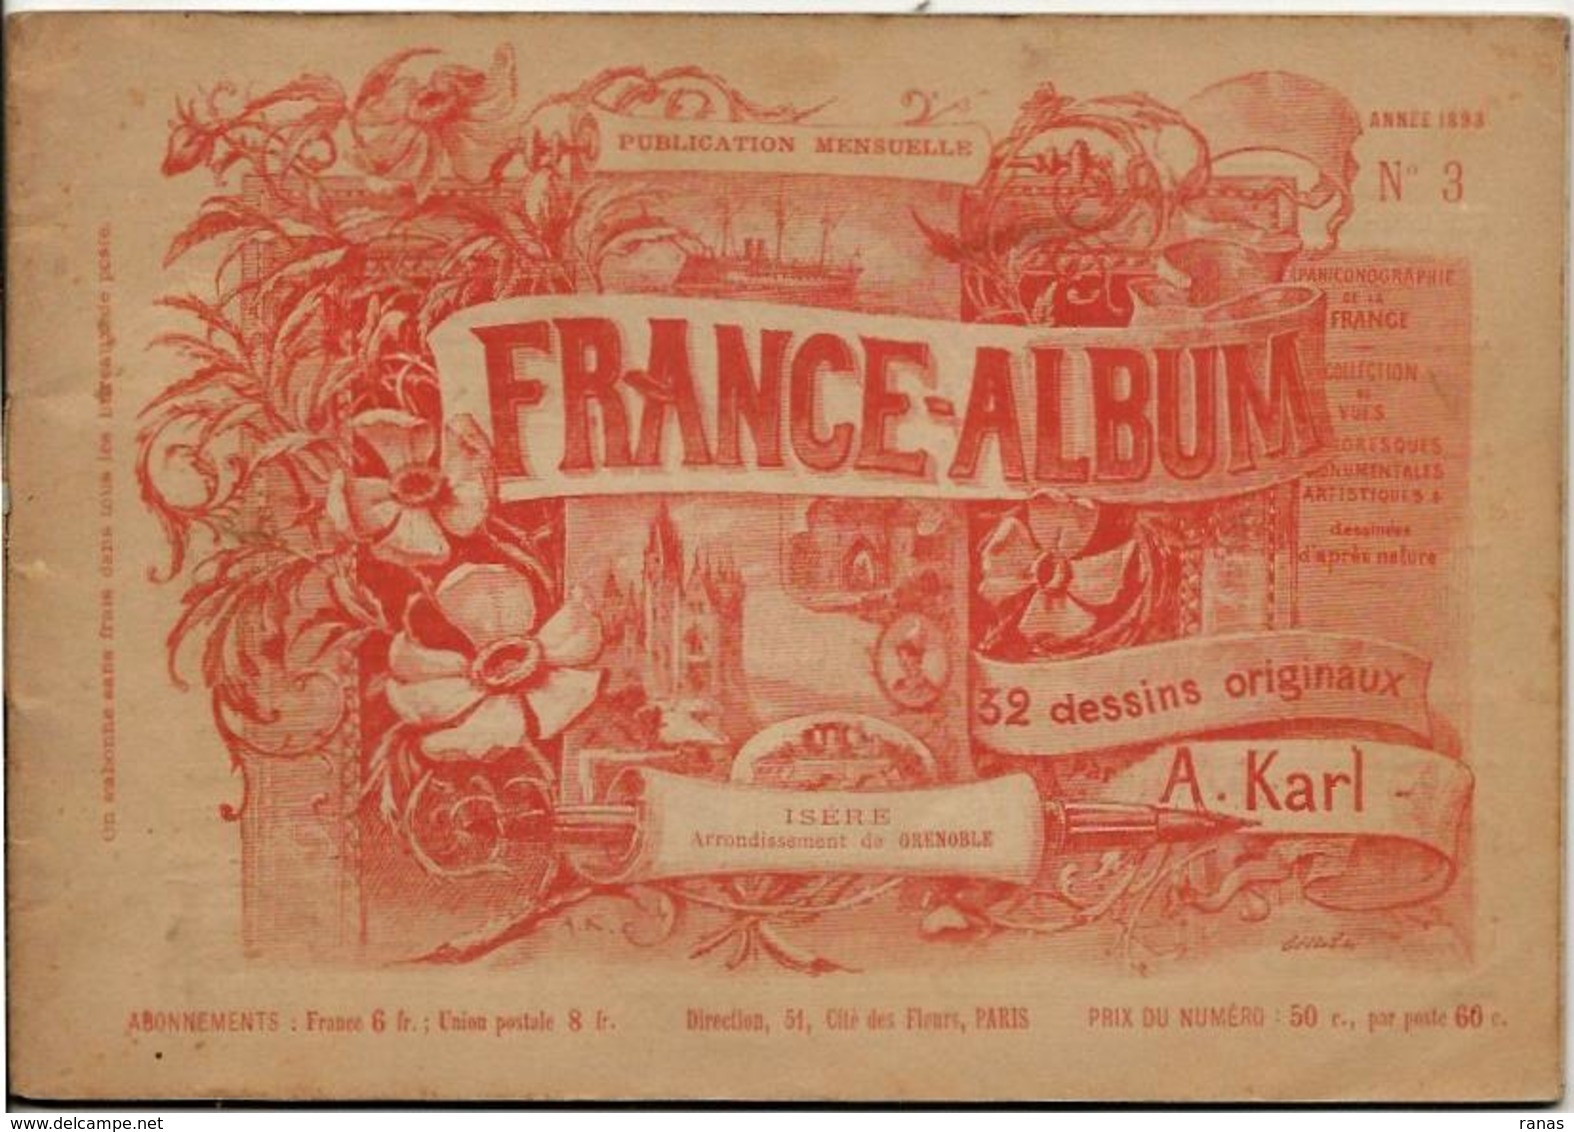 Isère 38 France Album De A. KARL, Carte Gravures Texte Publicités 1893 - Reiseprospekte